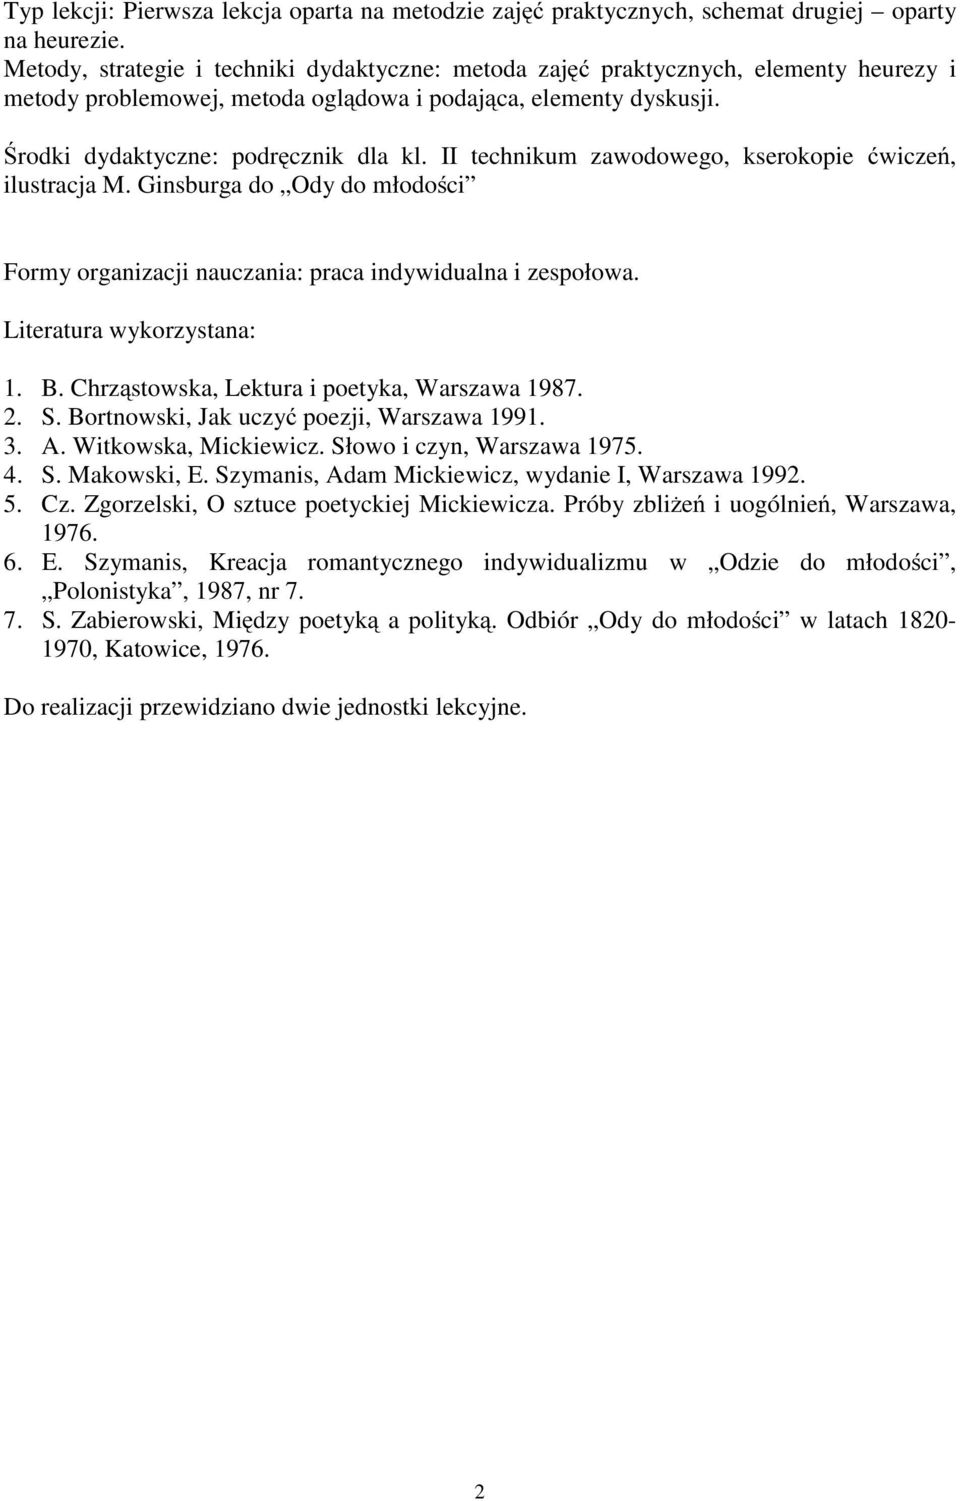 II technikum zawodowego, kserokopie ćwiczeń, ilustracja M. Ginsburga do Ody do młodości Formy organizacji nauczania: praca indywidualna i zespołowa. Literatura wykorzystana: 1. B.